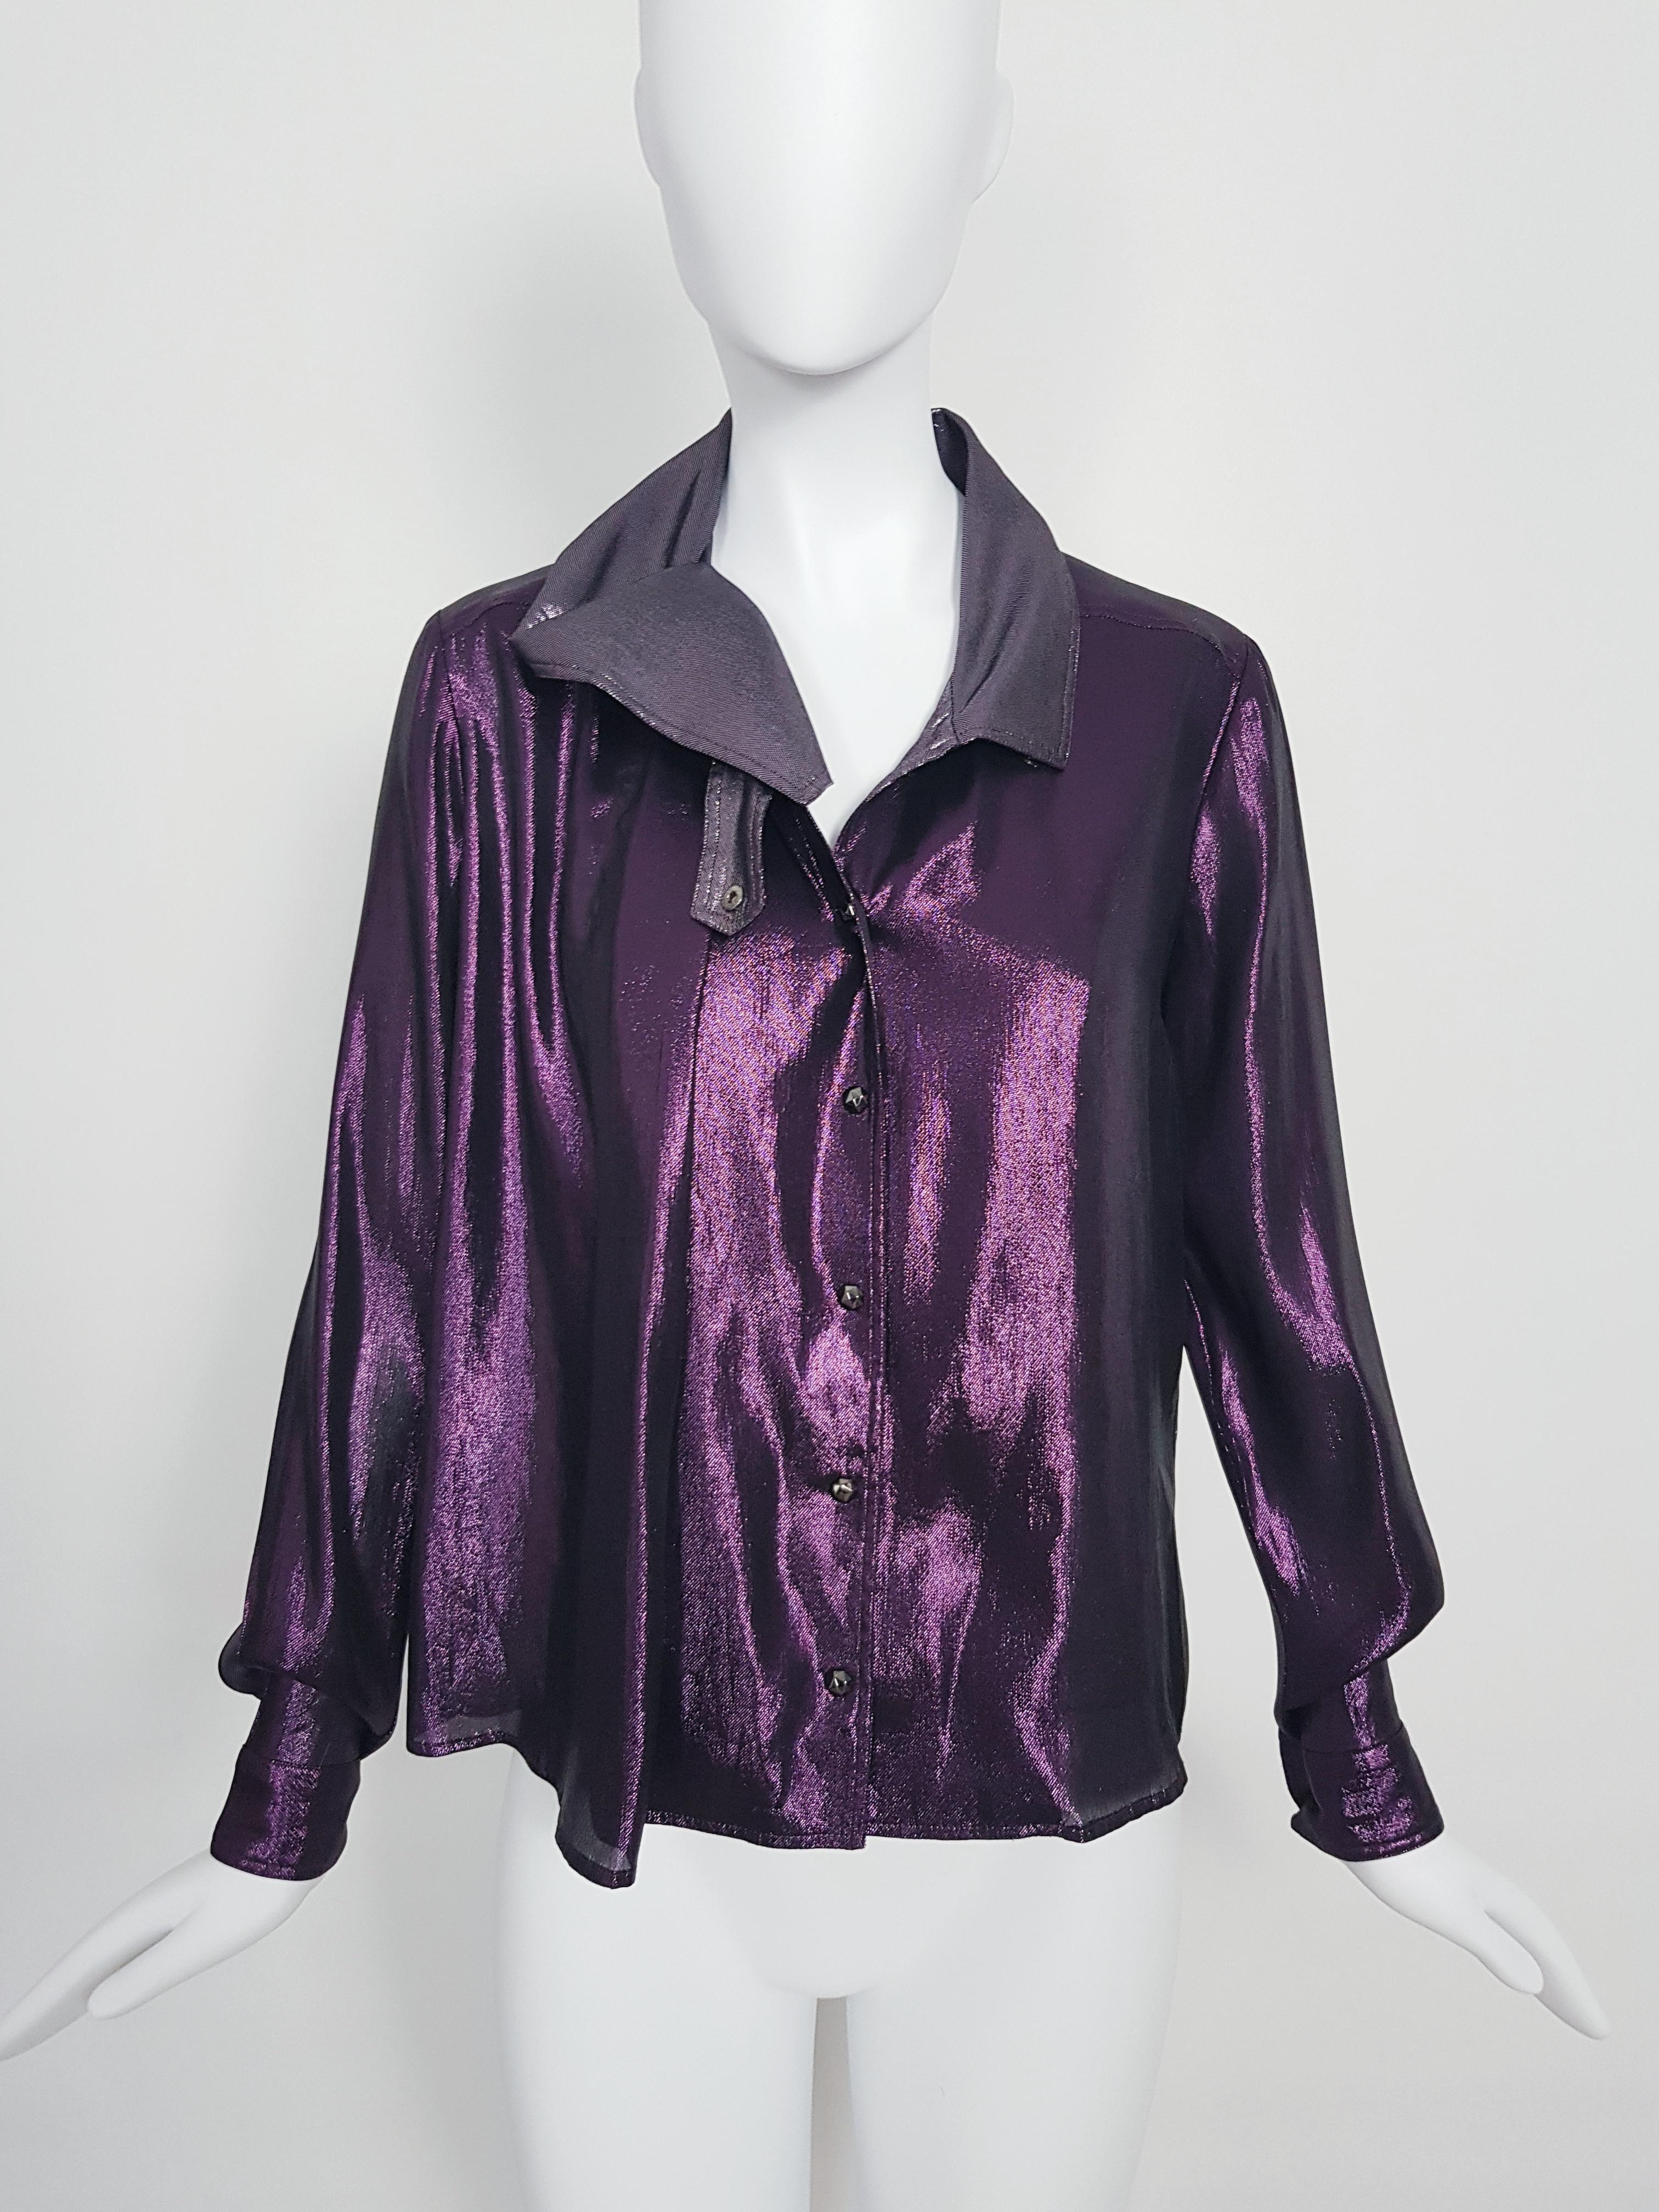 GUCCI RTW FW 2009 silk lurex Shirt In Excellent Condition For Sale In Genève, CH